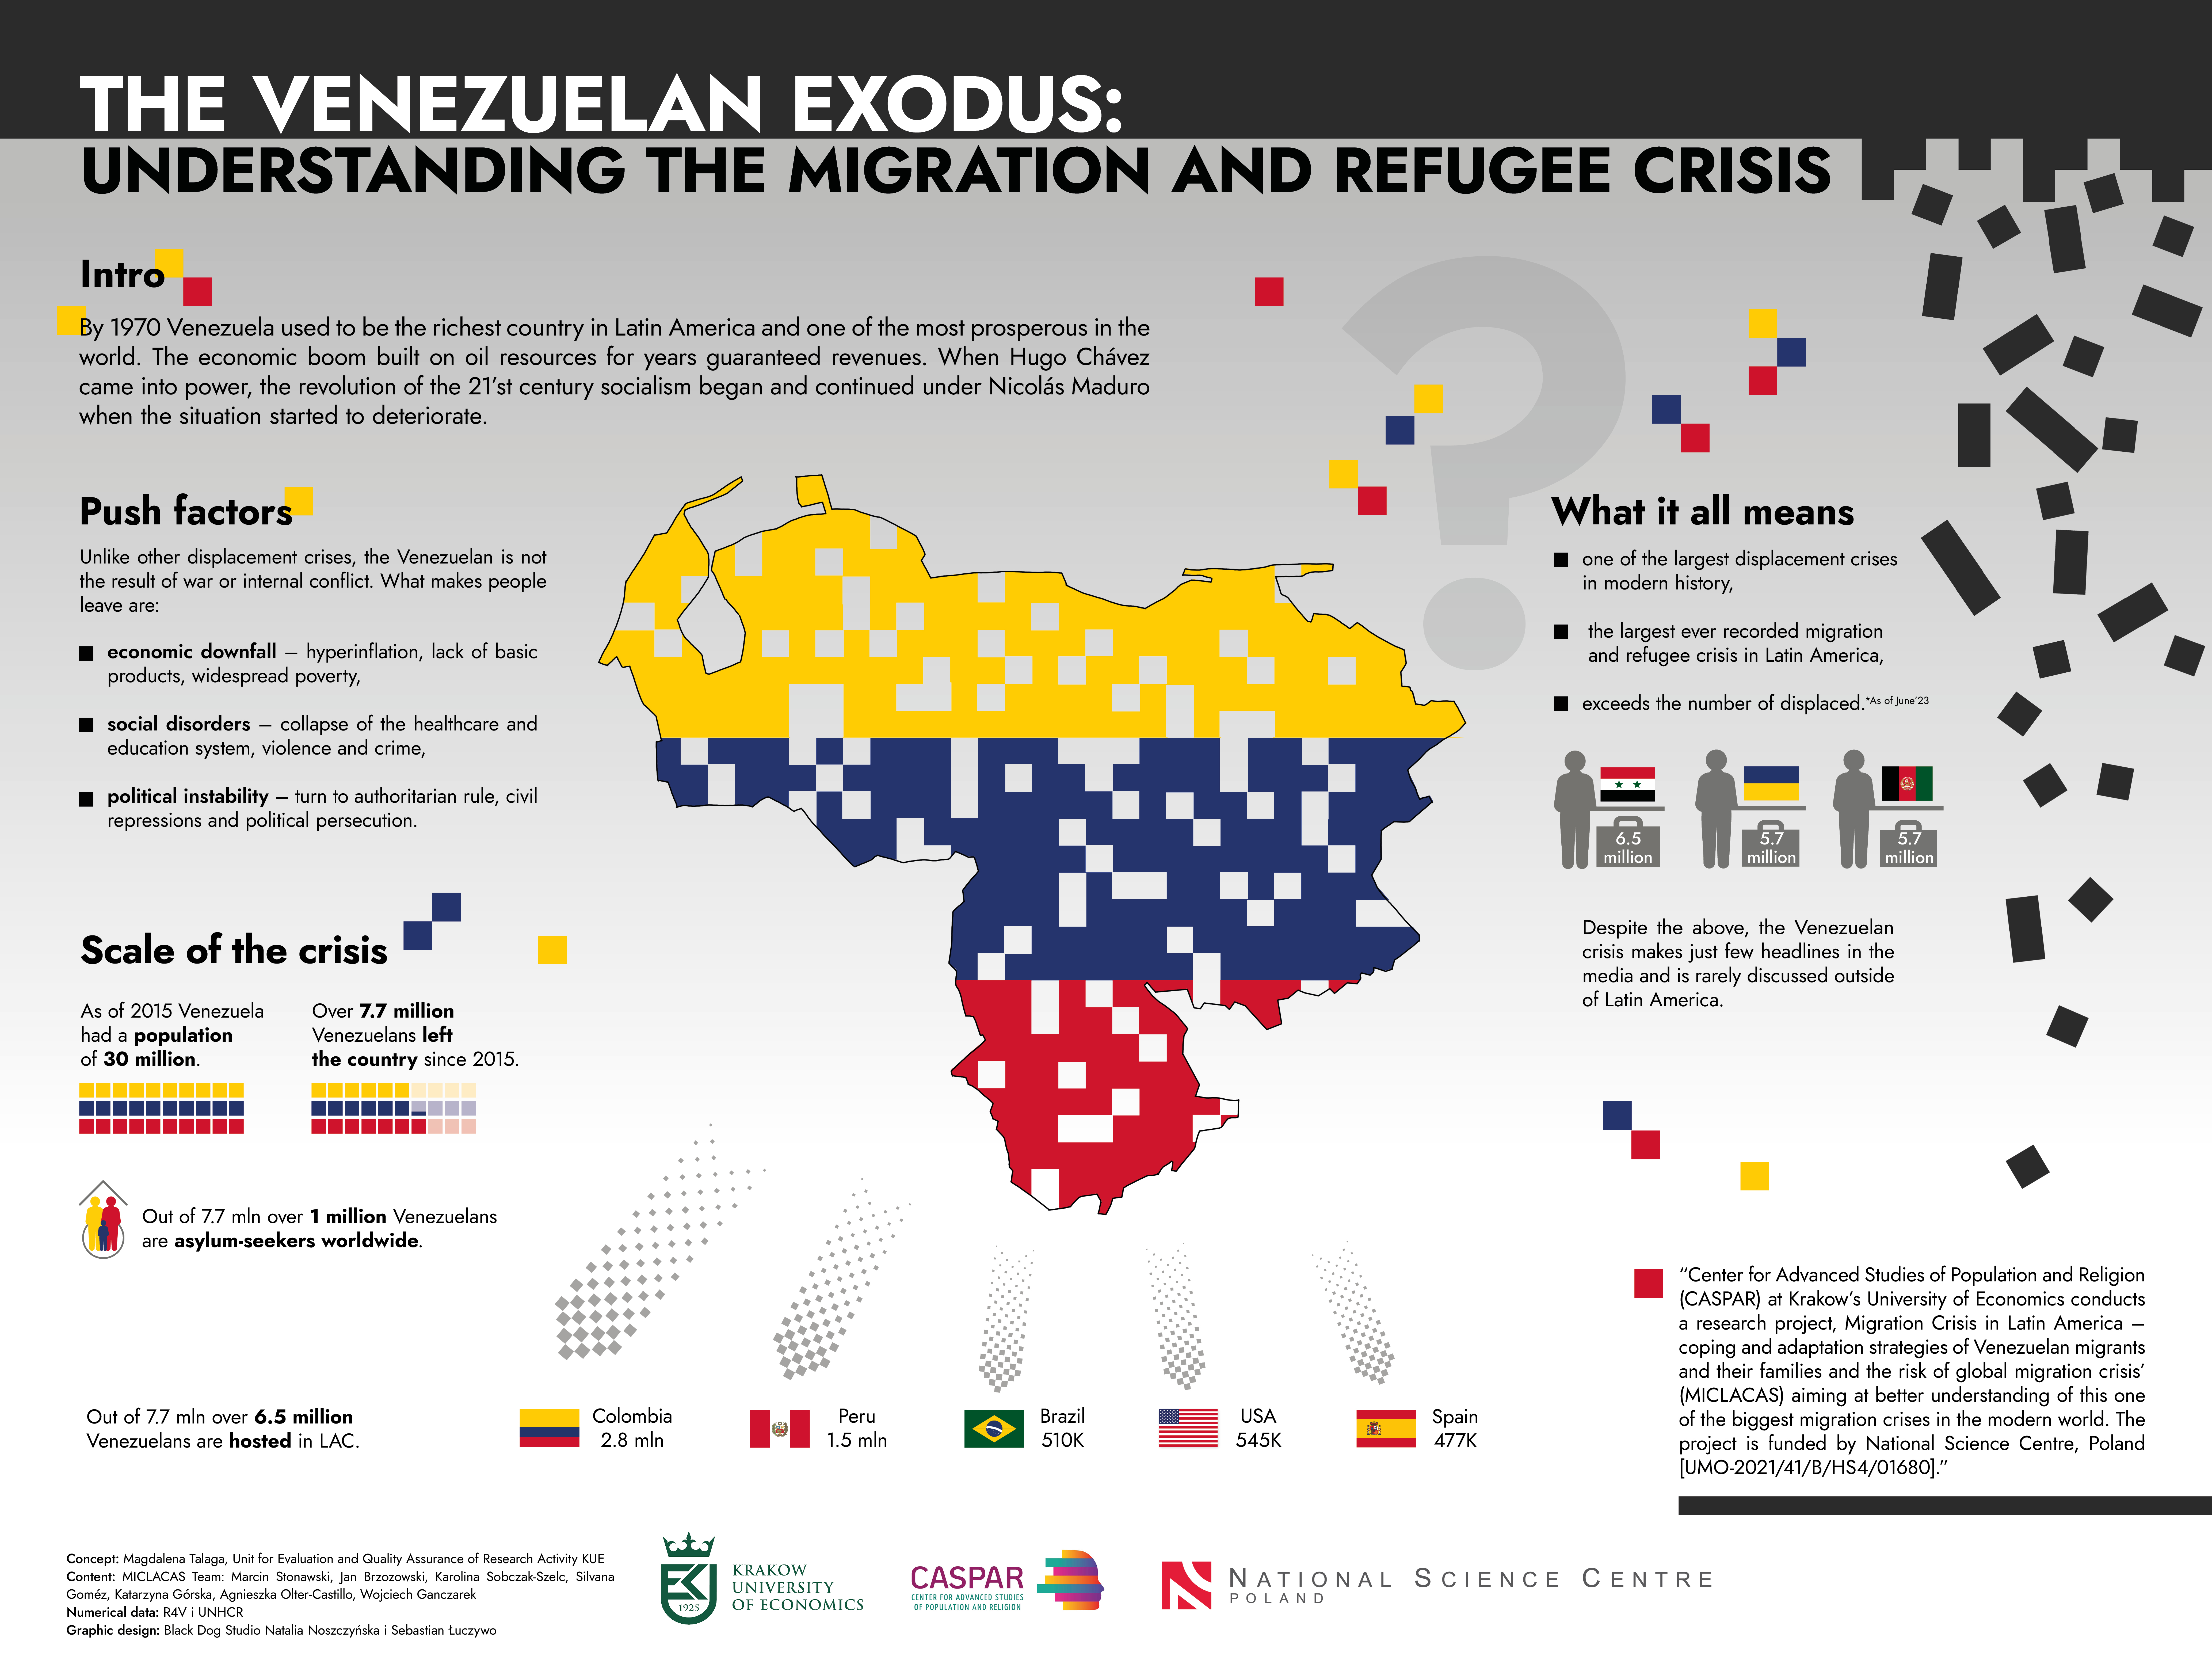 Kryzys migracyjny w Ameryce Łacińskiej – strategie radzenia sobie i adaptacji wenezuelskich migrantów i ich rodzin a ryzyko globalnego kryzysu migracyjnego